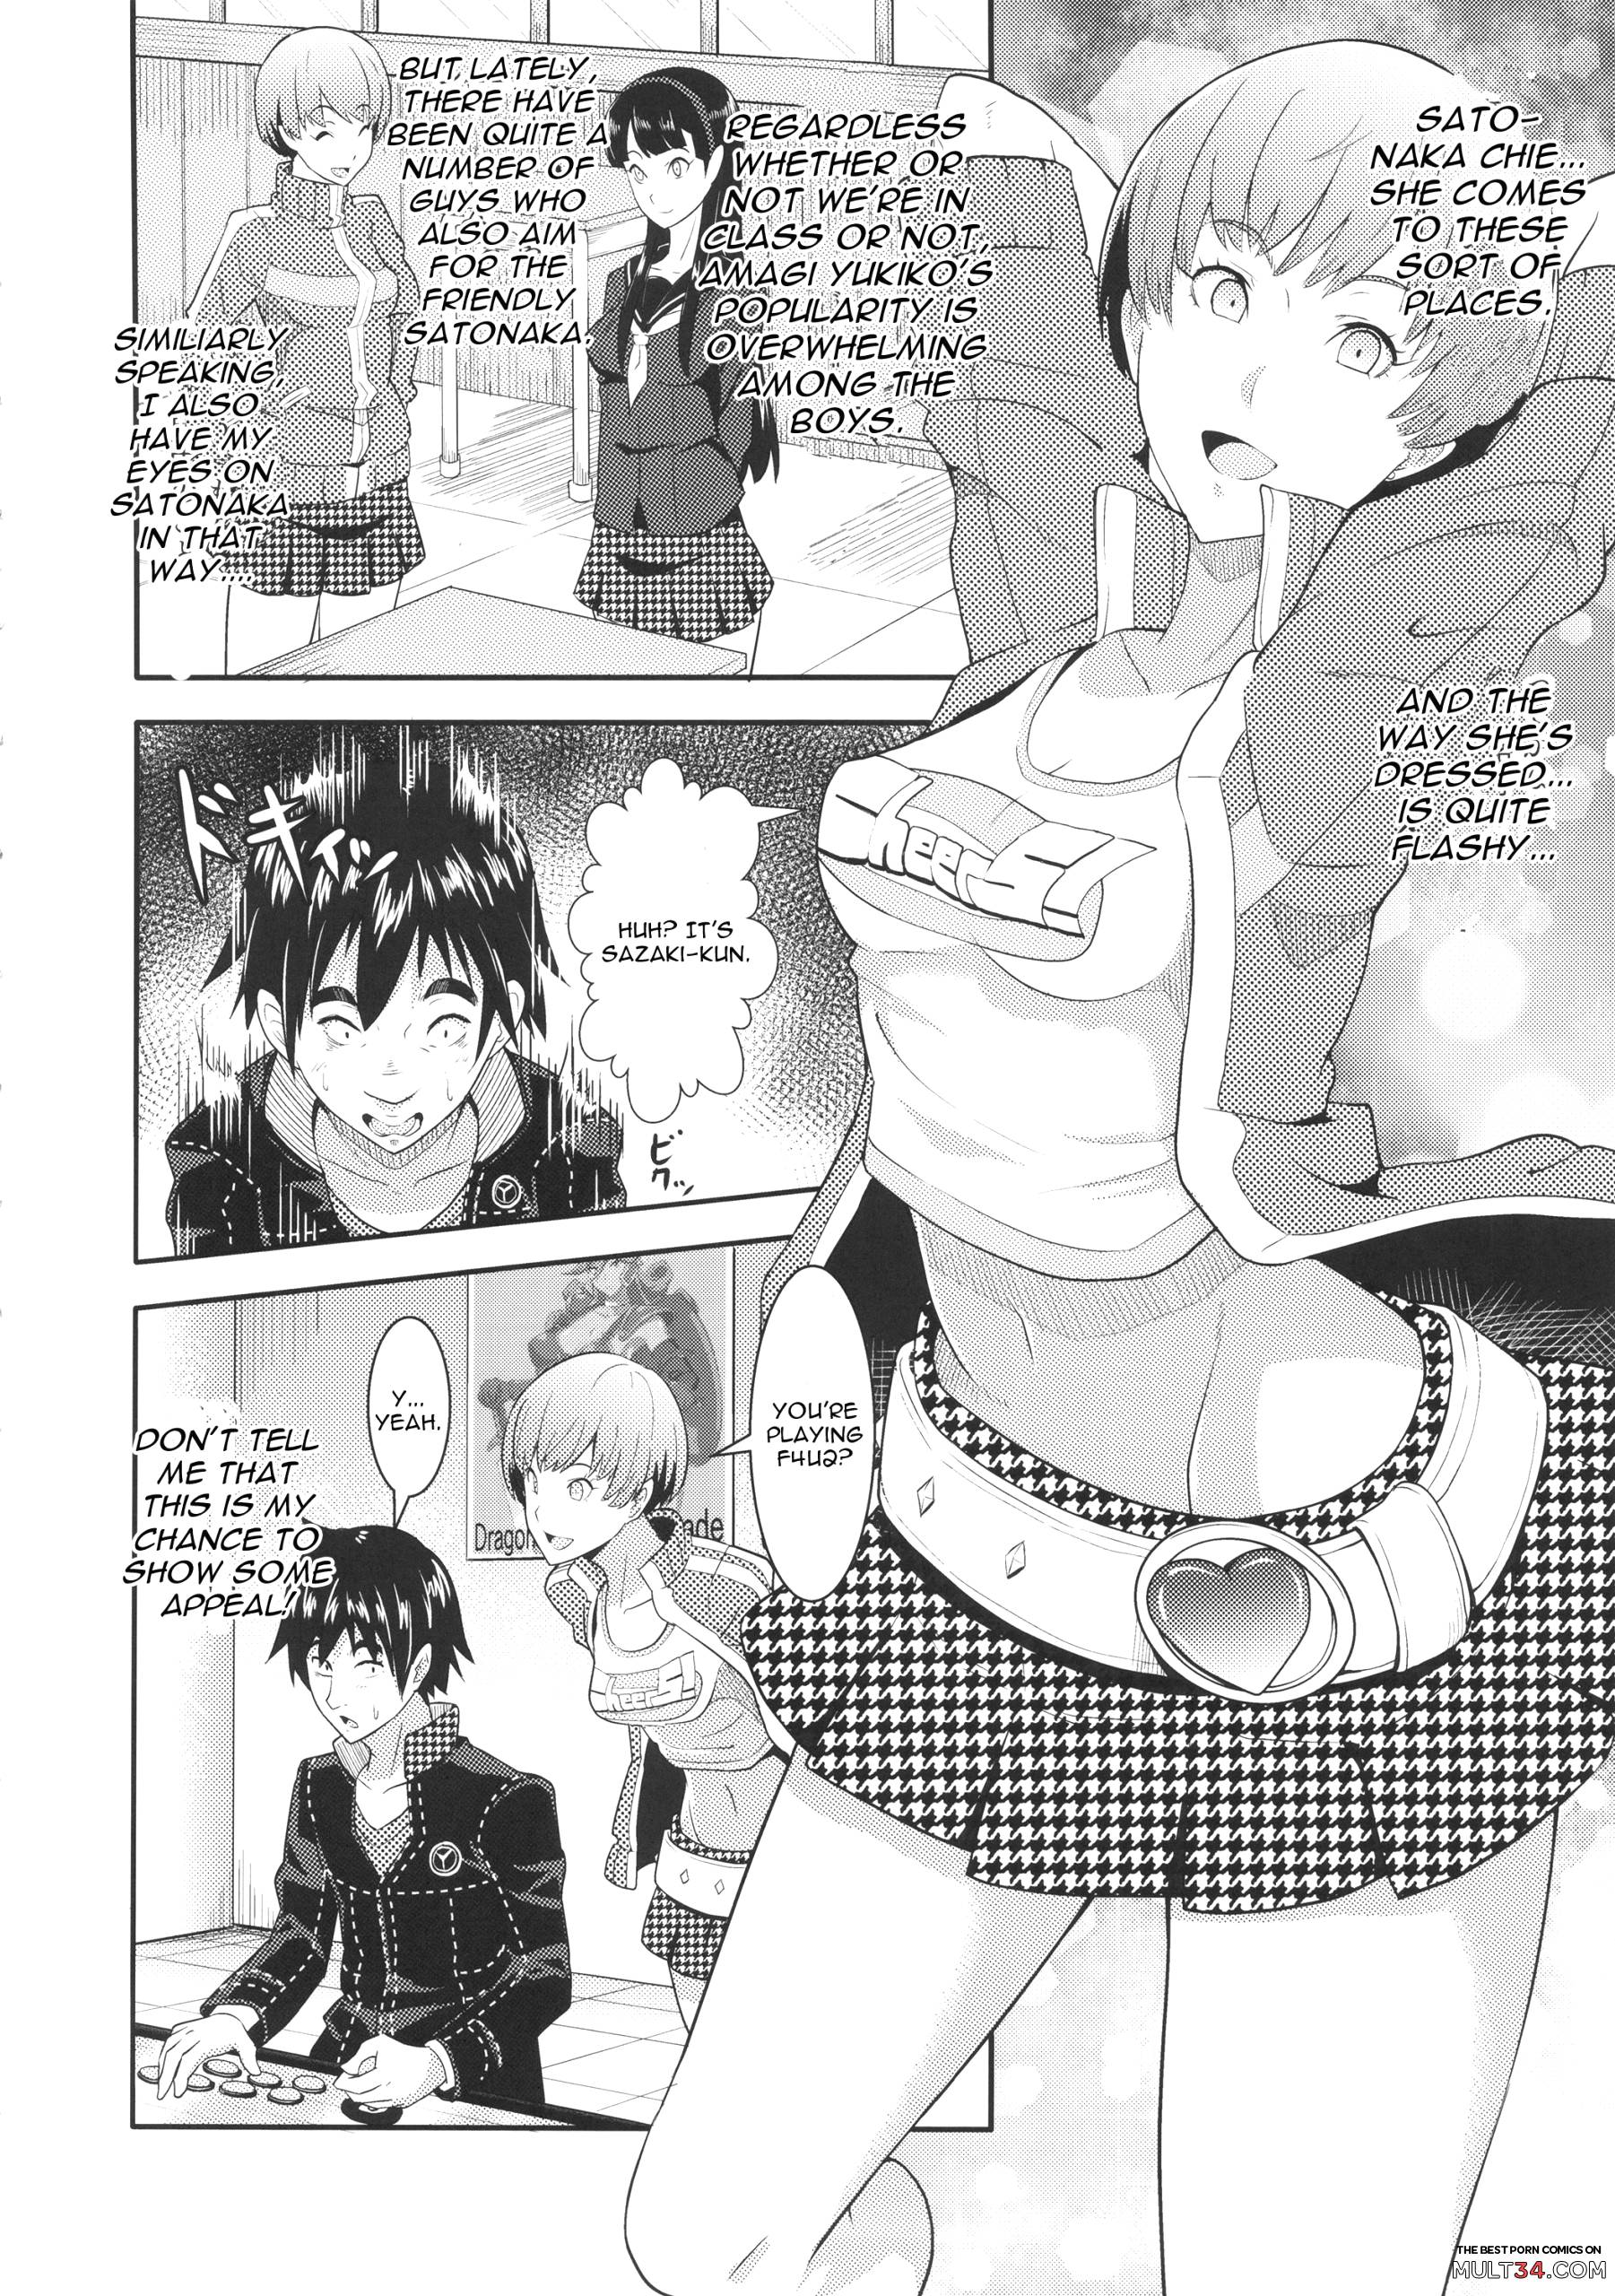 Chie - Shadow World - Satonaka Chie no Baai hentai manga for free | MULT34